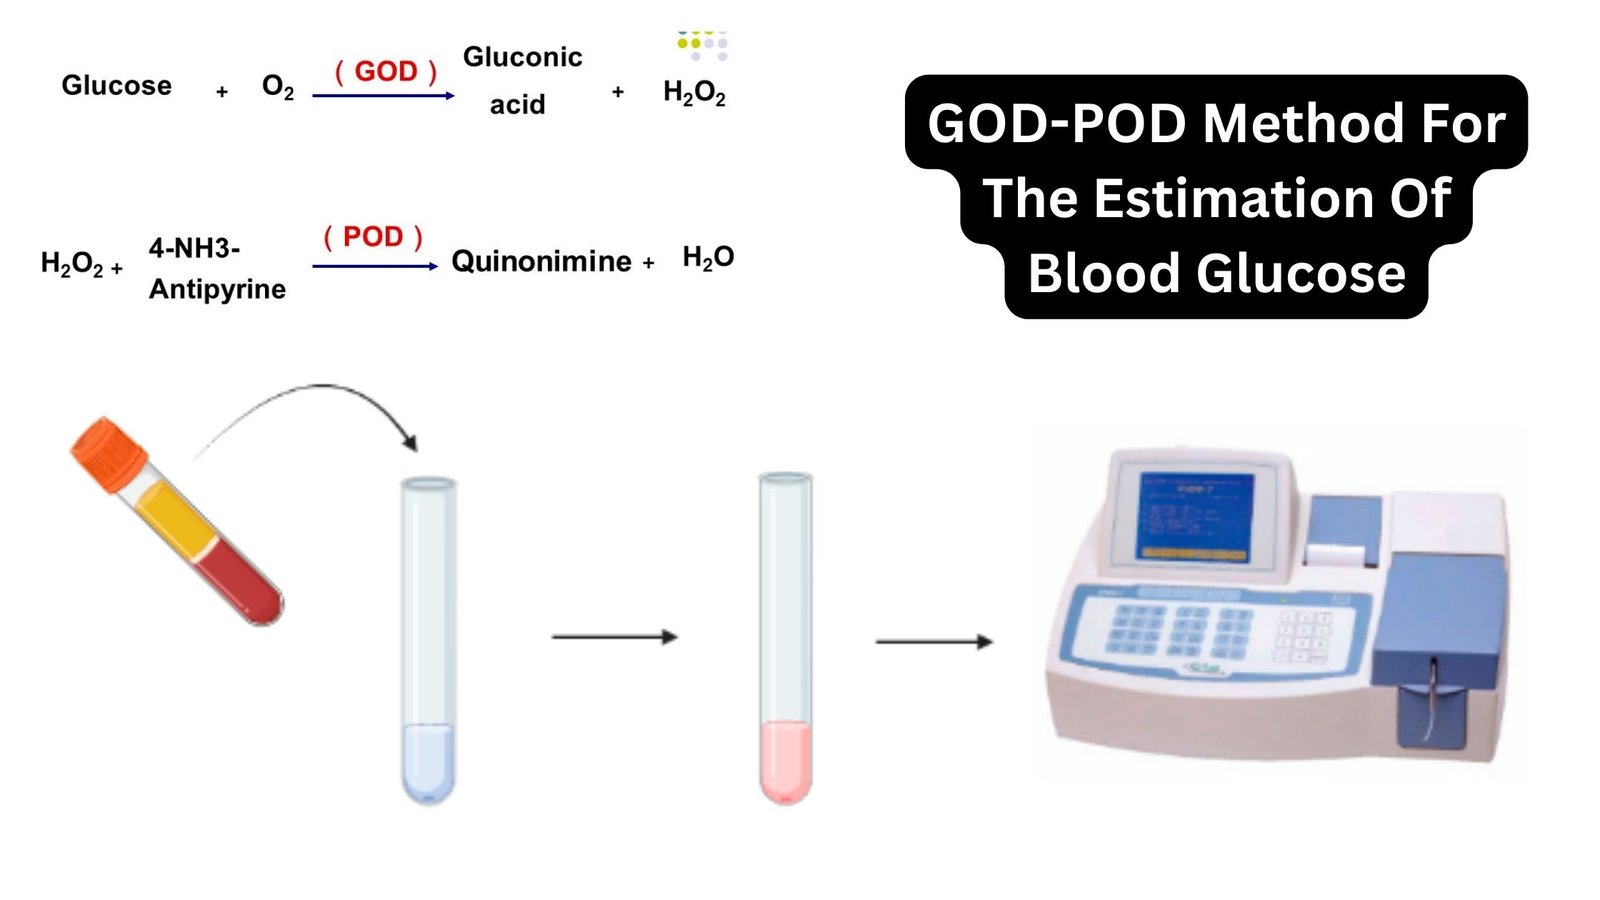 GOD-POD Method For The Estimation Of Blood Glucose